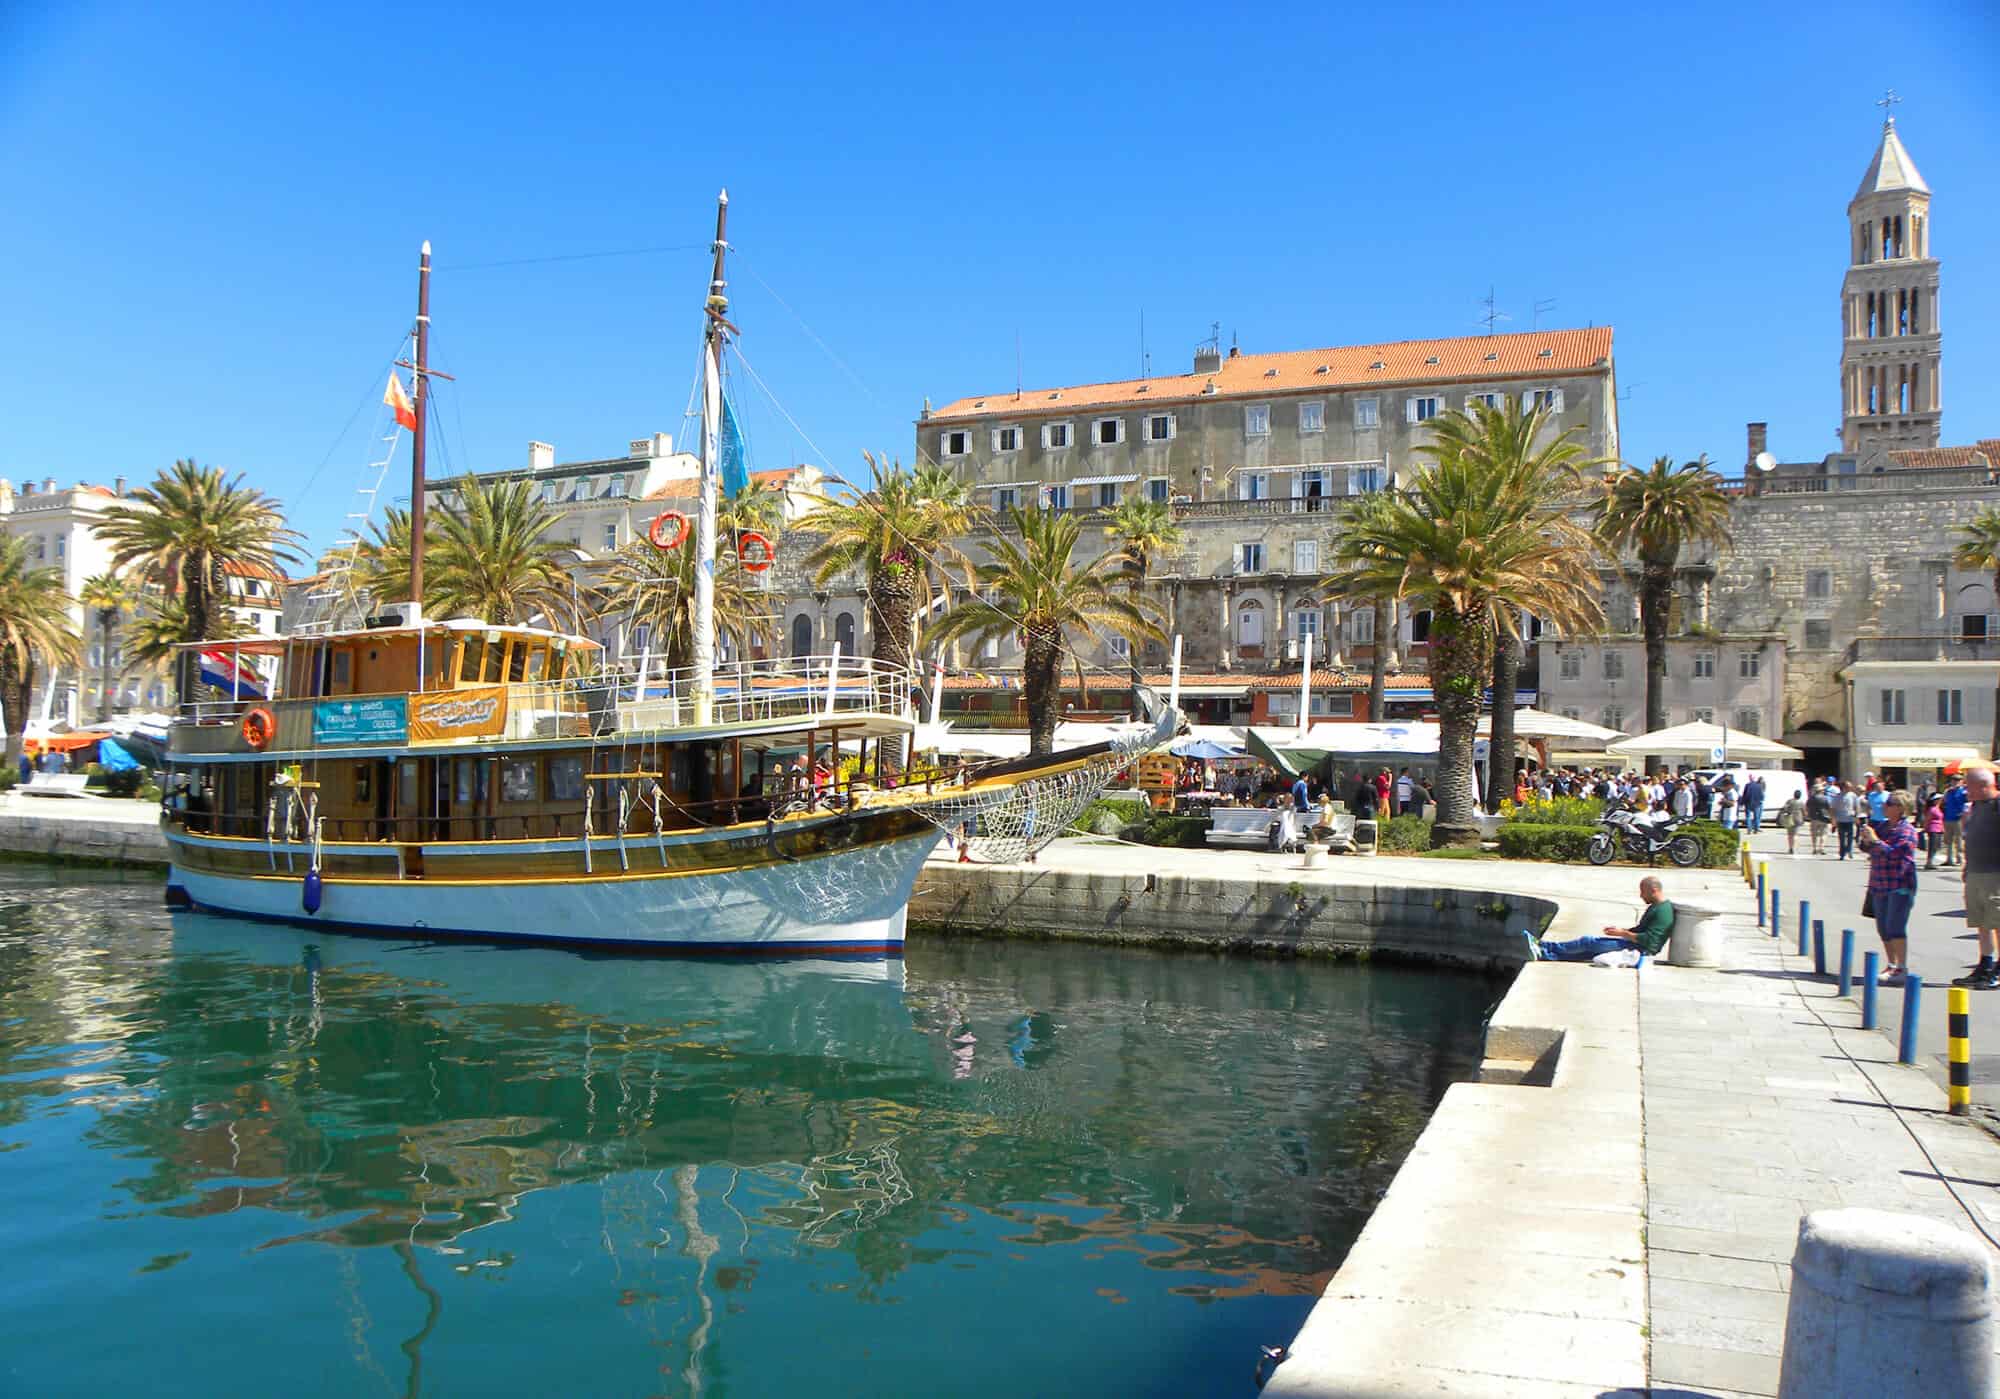 along the harbor in Split